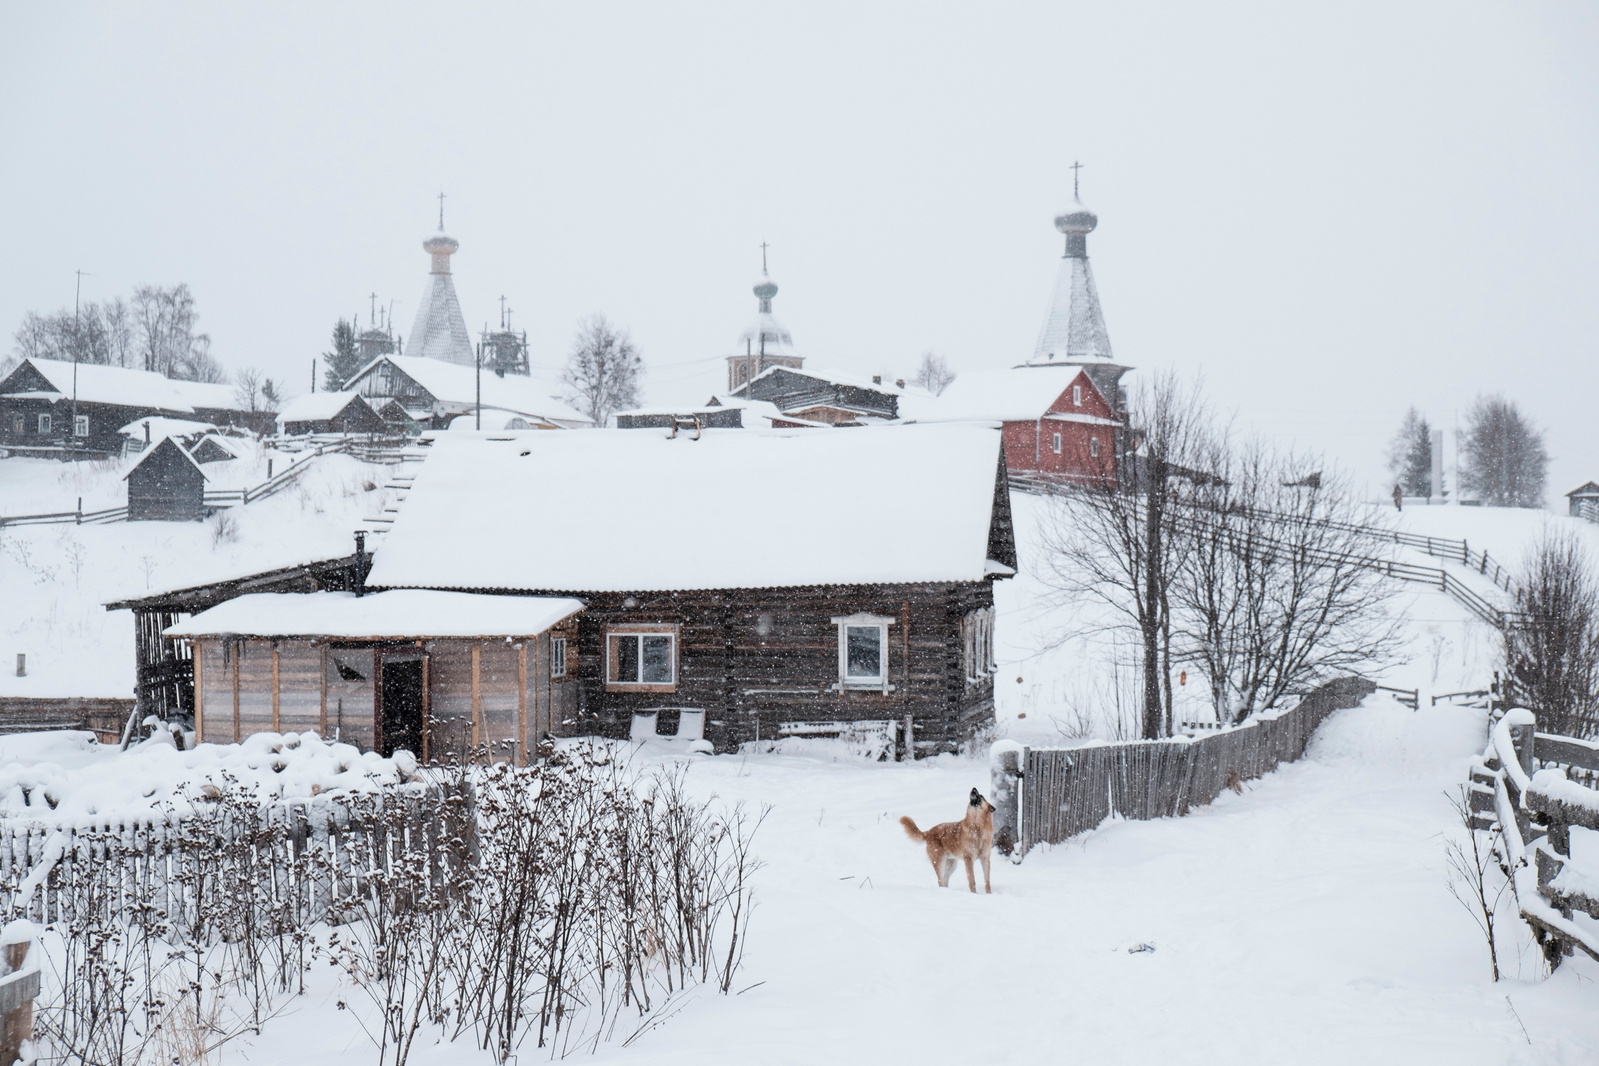 Paberega Village, Arkhangelsk Region for Zapovednik